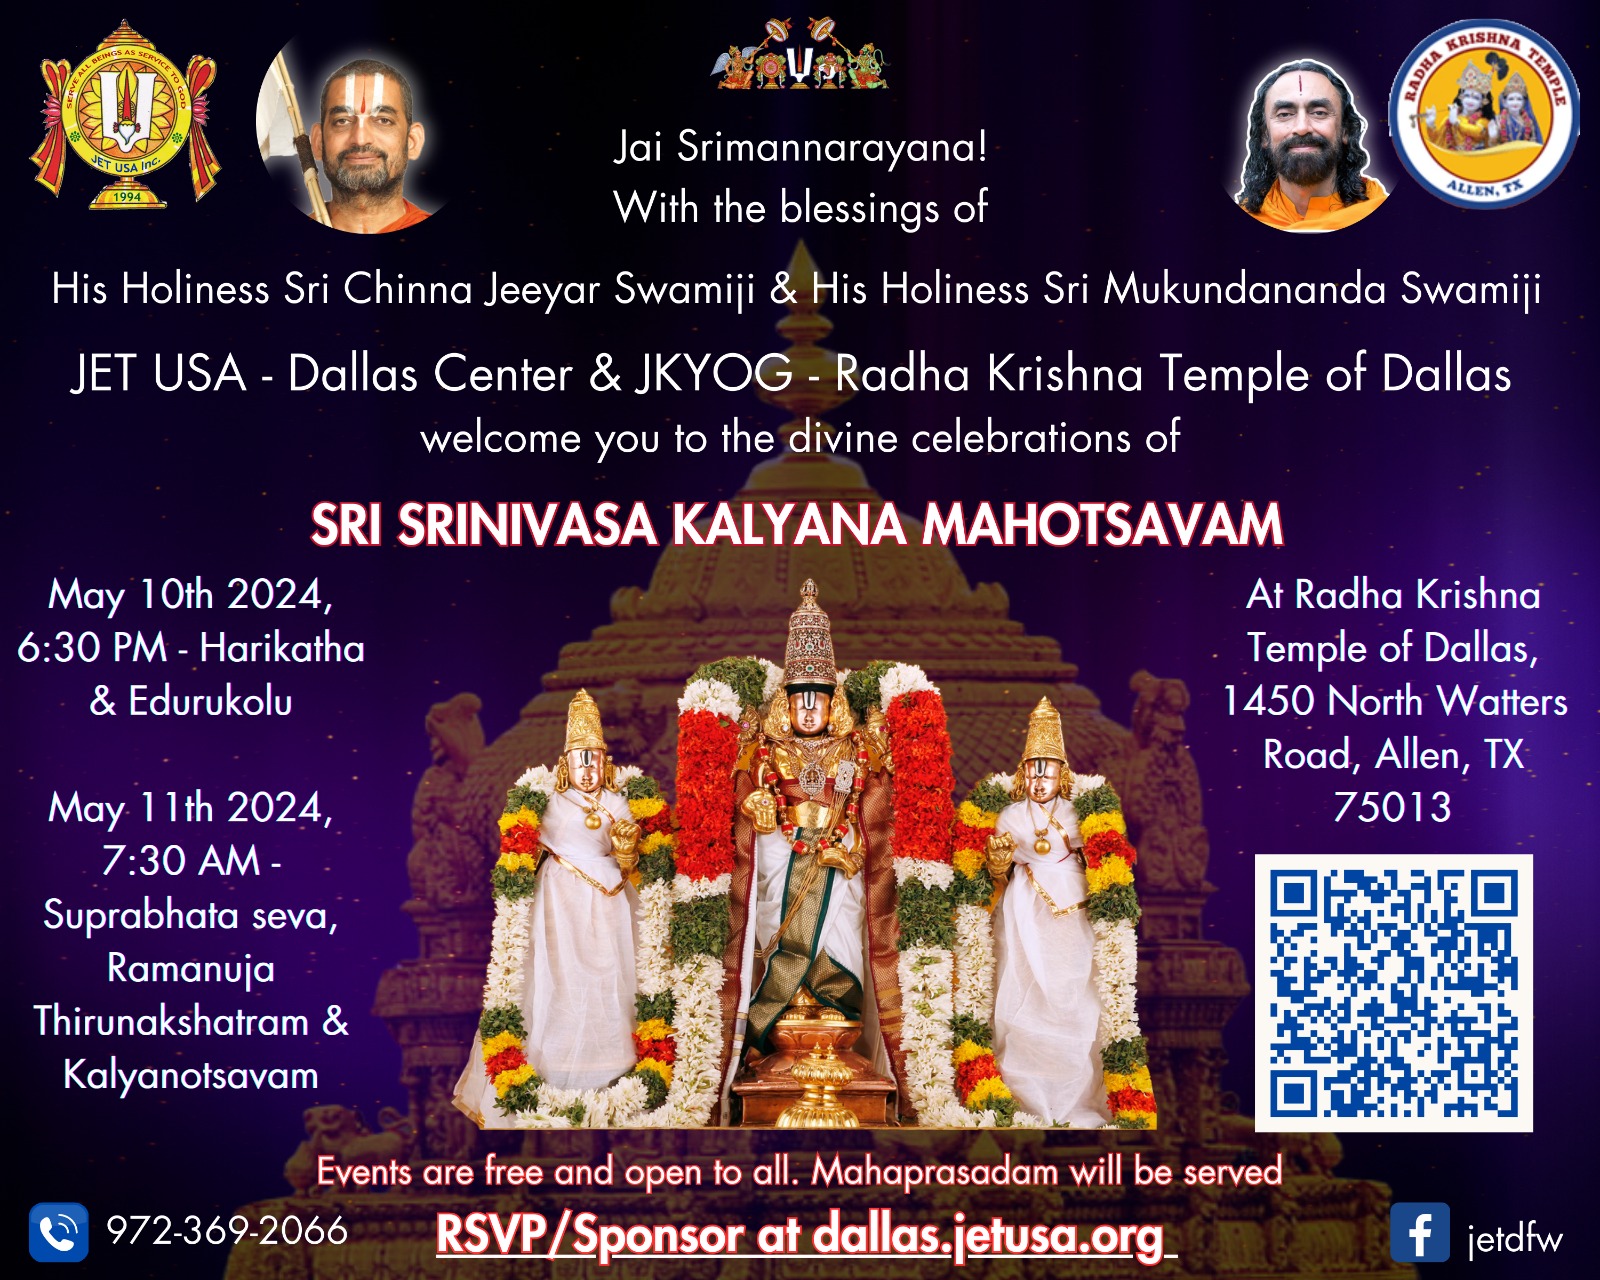 Sri Srinivasa Kalyana Mahotsavam